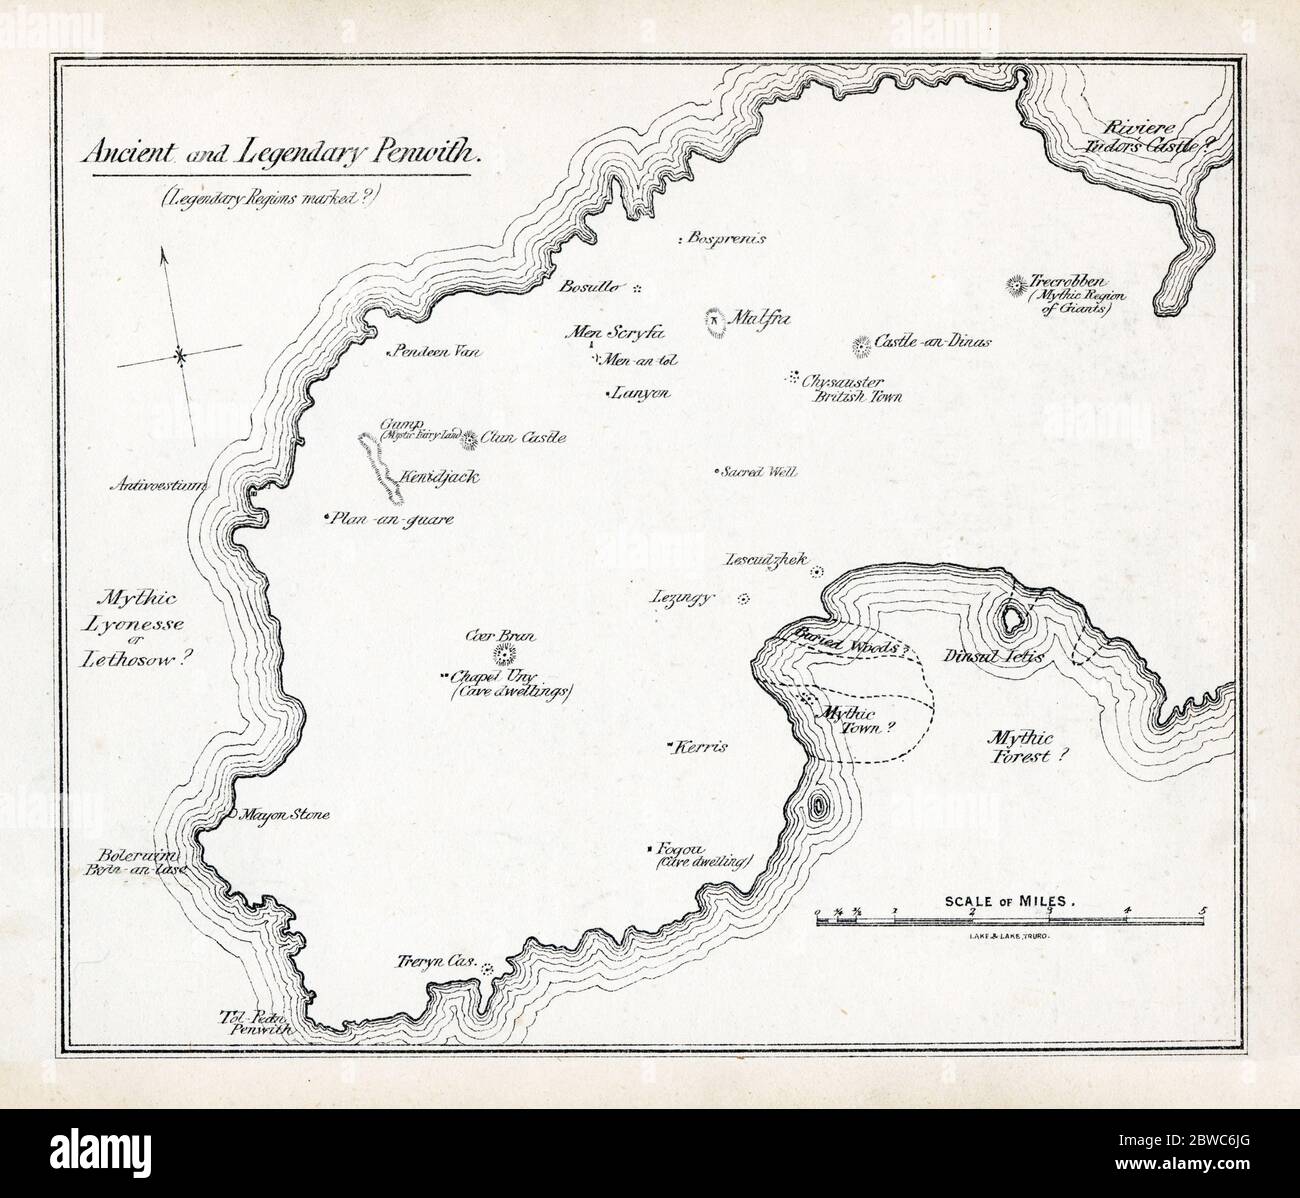 Antica e leggendaria mappa di Penwith del Rev W.S.Lach-Szyrma , vicario di Newlyn San Pietro, nella sua storia del 1878 della Penwith Occidentale con i luoghi menzionati nel vecchio mito e leggenda della Cornovaglia Foto Stock